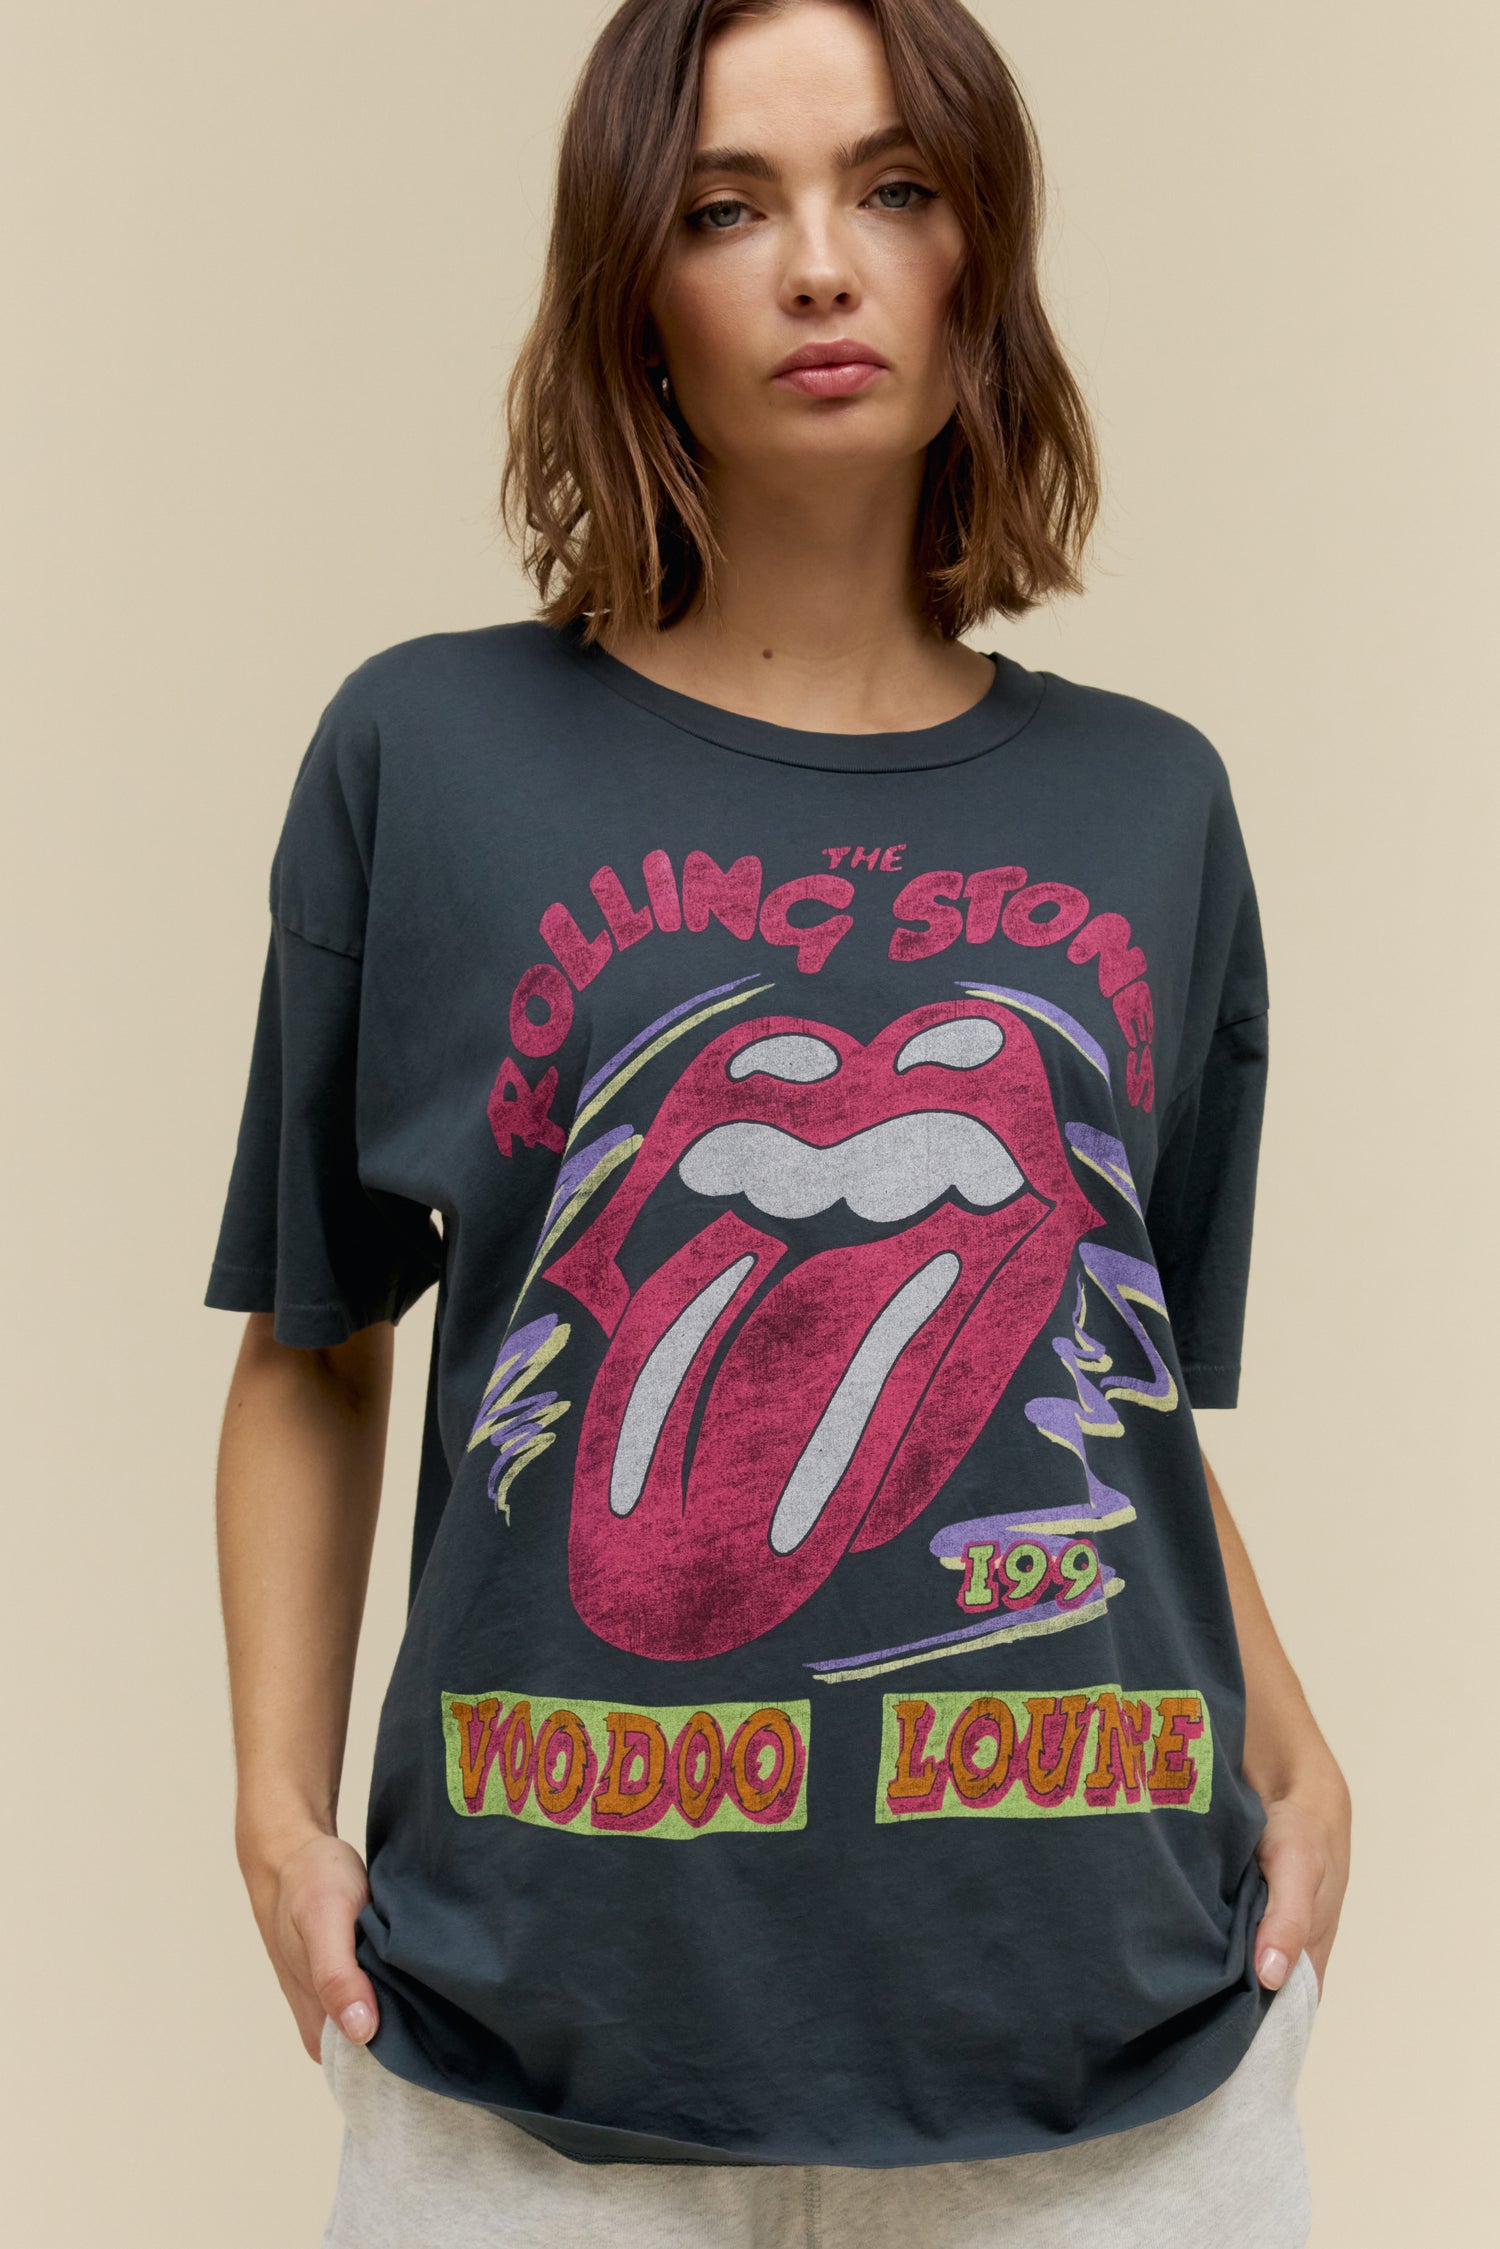 Rolling Stones Voodoo Lounge 1994 Merch Tee